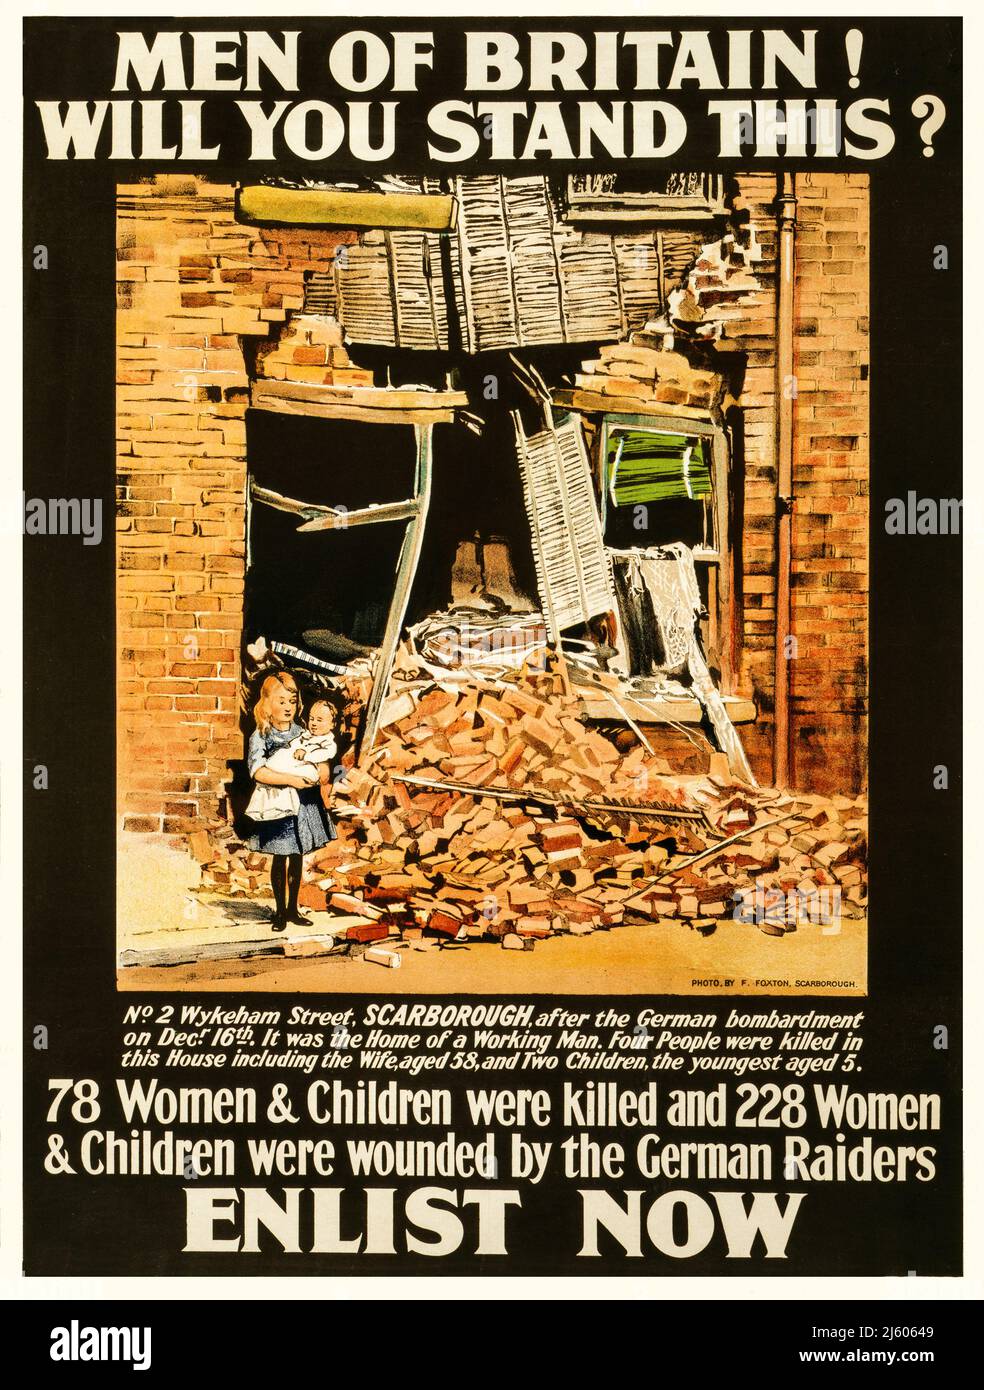 Une affiche de recrutement publicitaire britannique datant de 1915 montre une photo à la suite d'un raid aérien où 78 femmes et enfants ont été tués et 228 femmes et enfants blessés par les raids allemands. Affiche montrant une petite fille tenant un bébé, à l'extérieur d'un bâtiment endommagé par la bombe. 1915 photo de F. Foxton de Scarborough. Banque D'Images